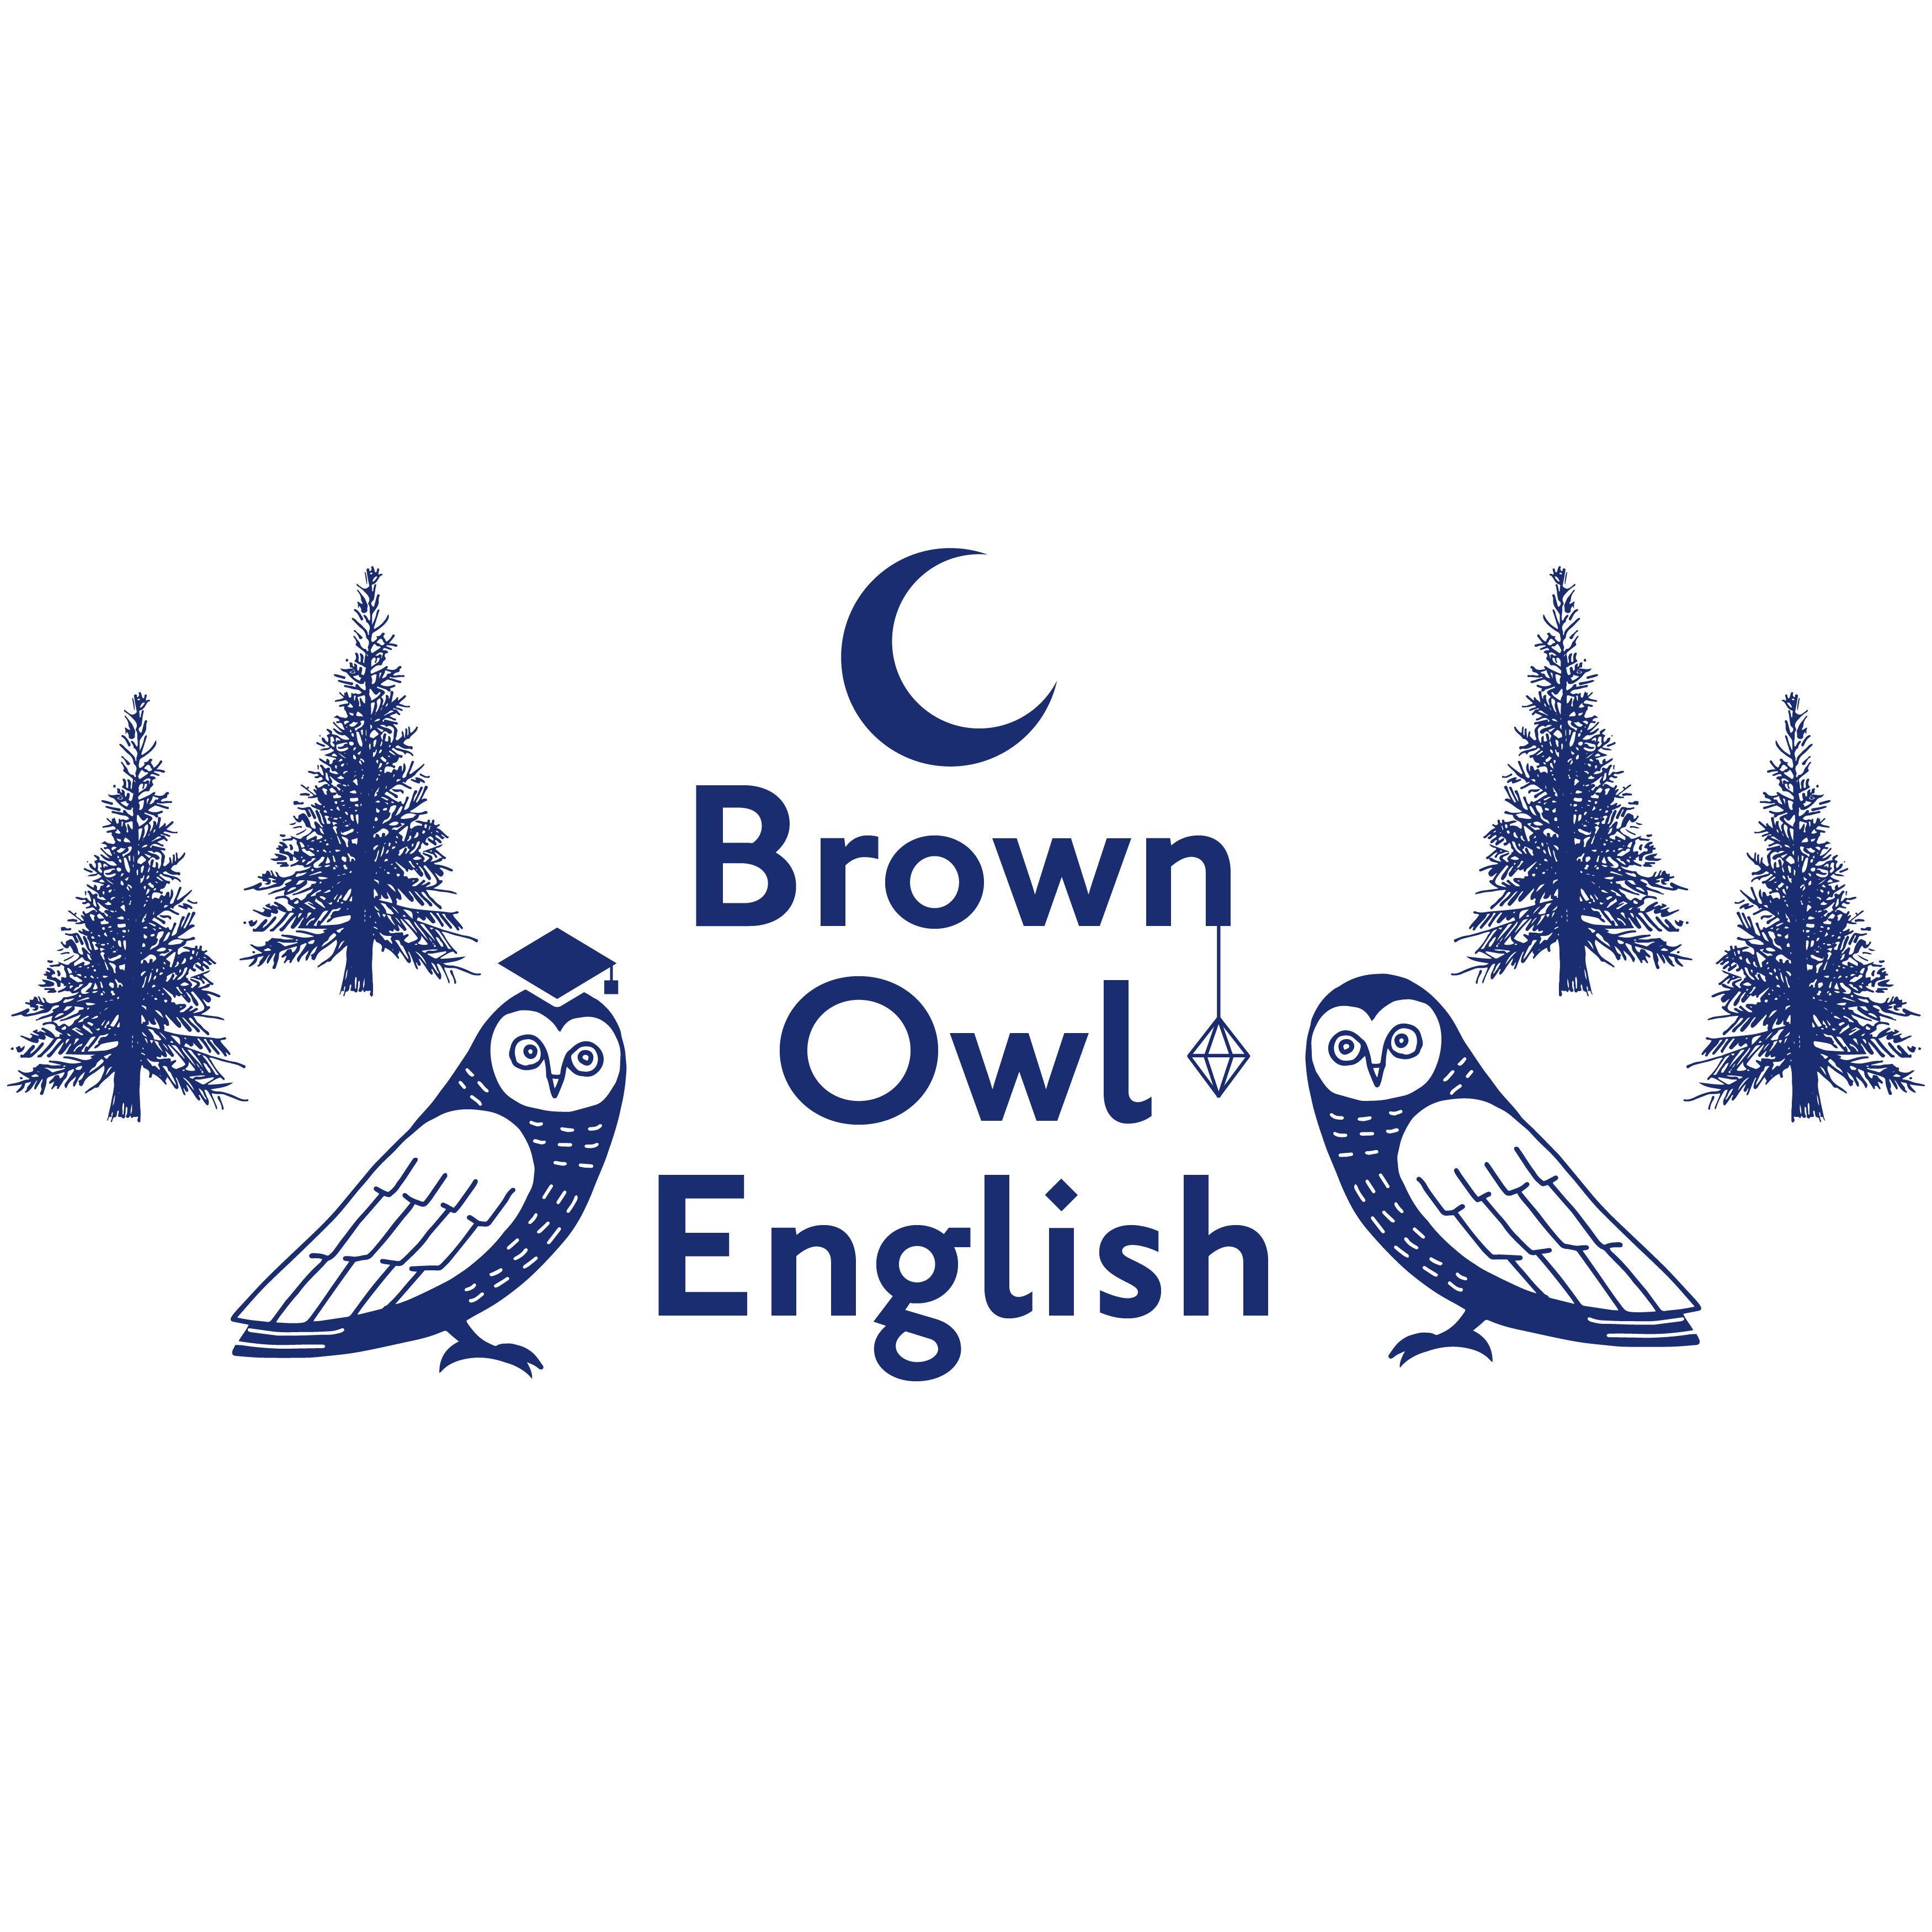 豊橋市の英会話教室・英会話スクールのブラウン・アウル・イングリッシュです。イギリス英語の英会話です。イギリス人講師による本格的な英語のレッスン!無料体験レッスン受付中です。